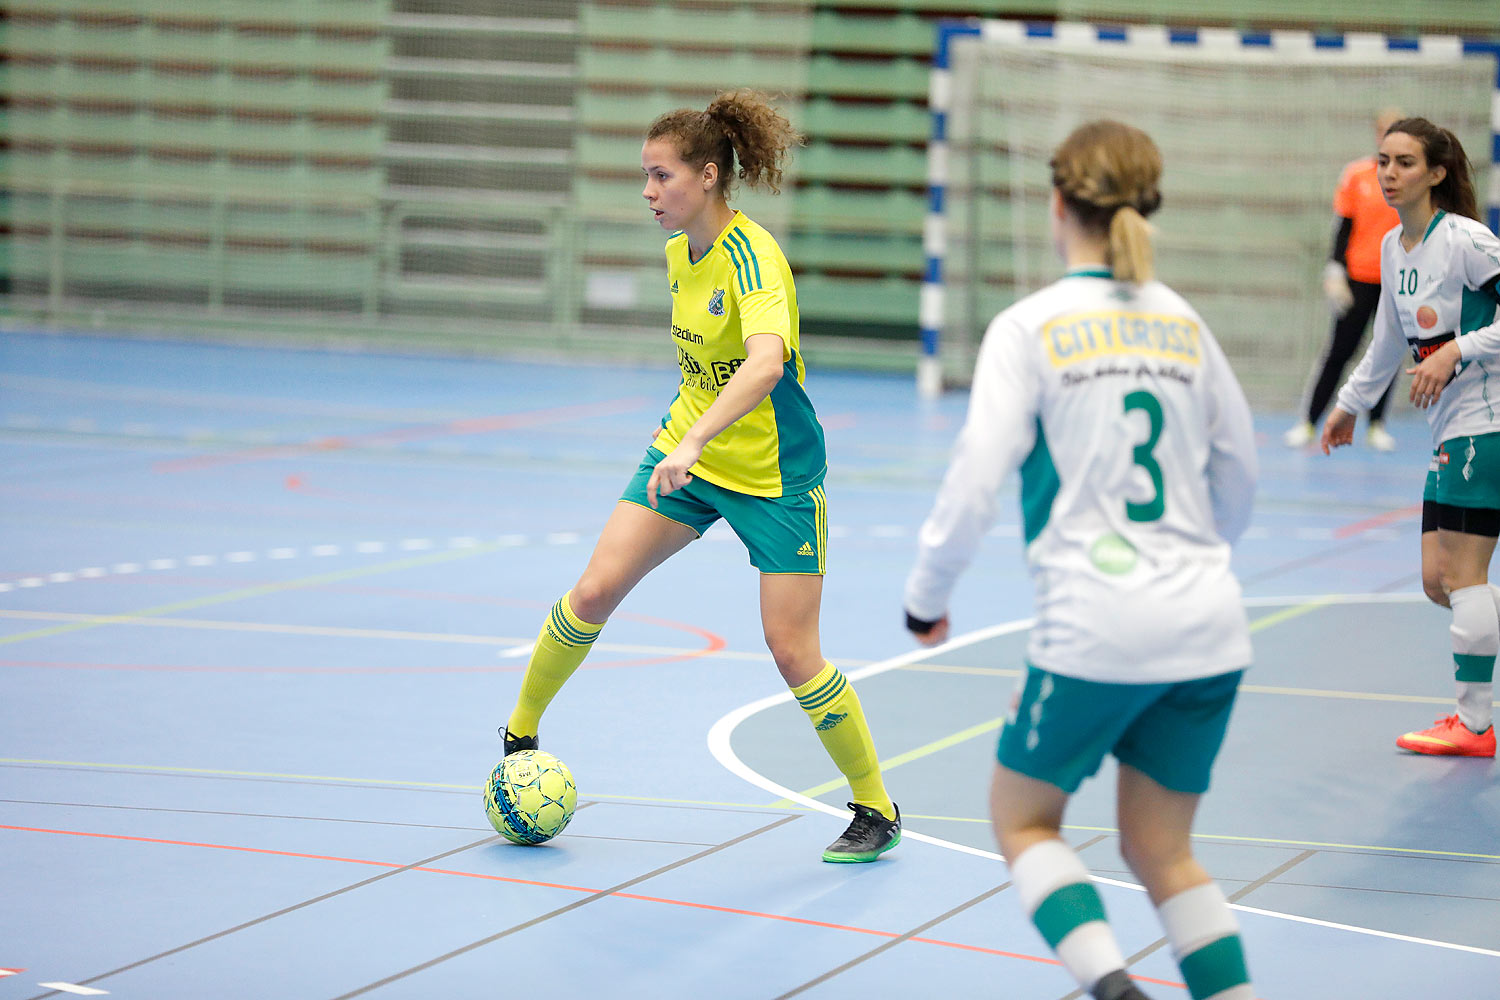 Skövde Futsalcup Damer Hertzöga BK 1-Axvalls IF,dam,Arena Skövde,Skövde,Sverige,Skövde Futsalcup 2016,Futsal,2016,142139